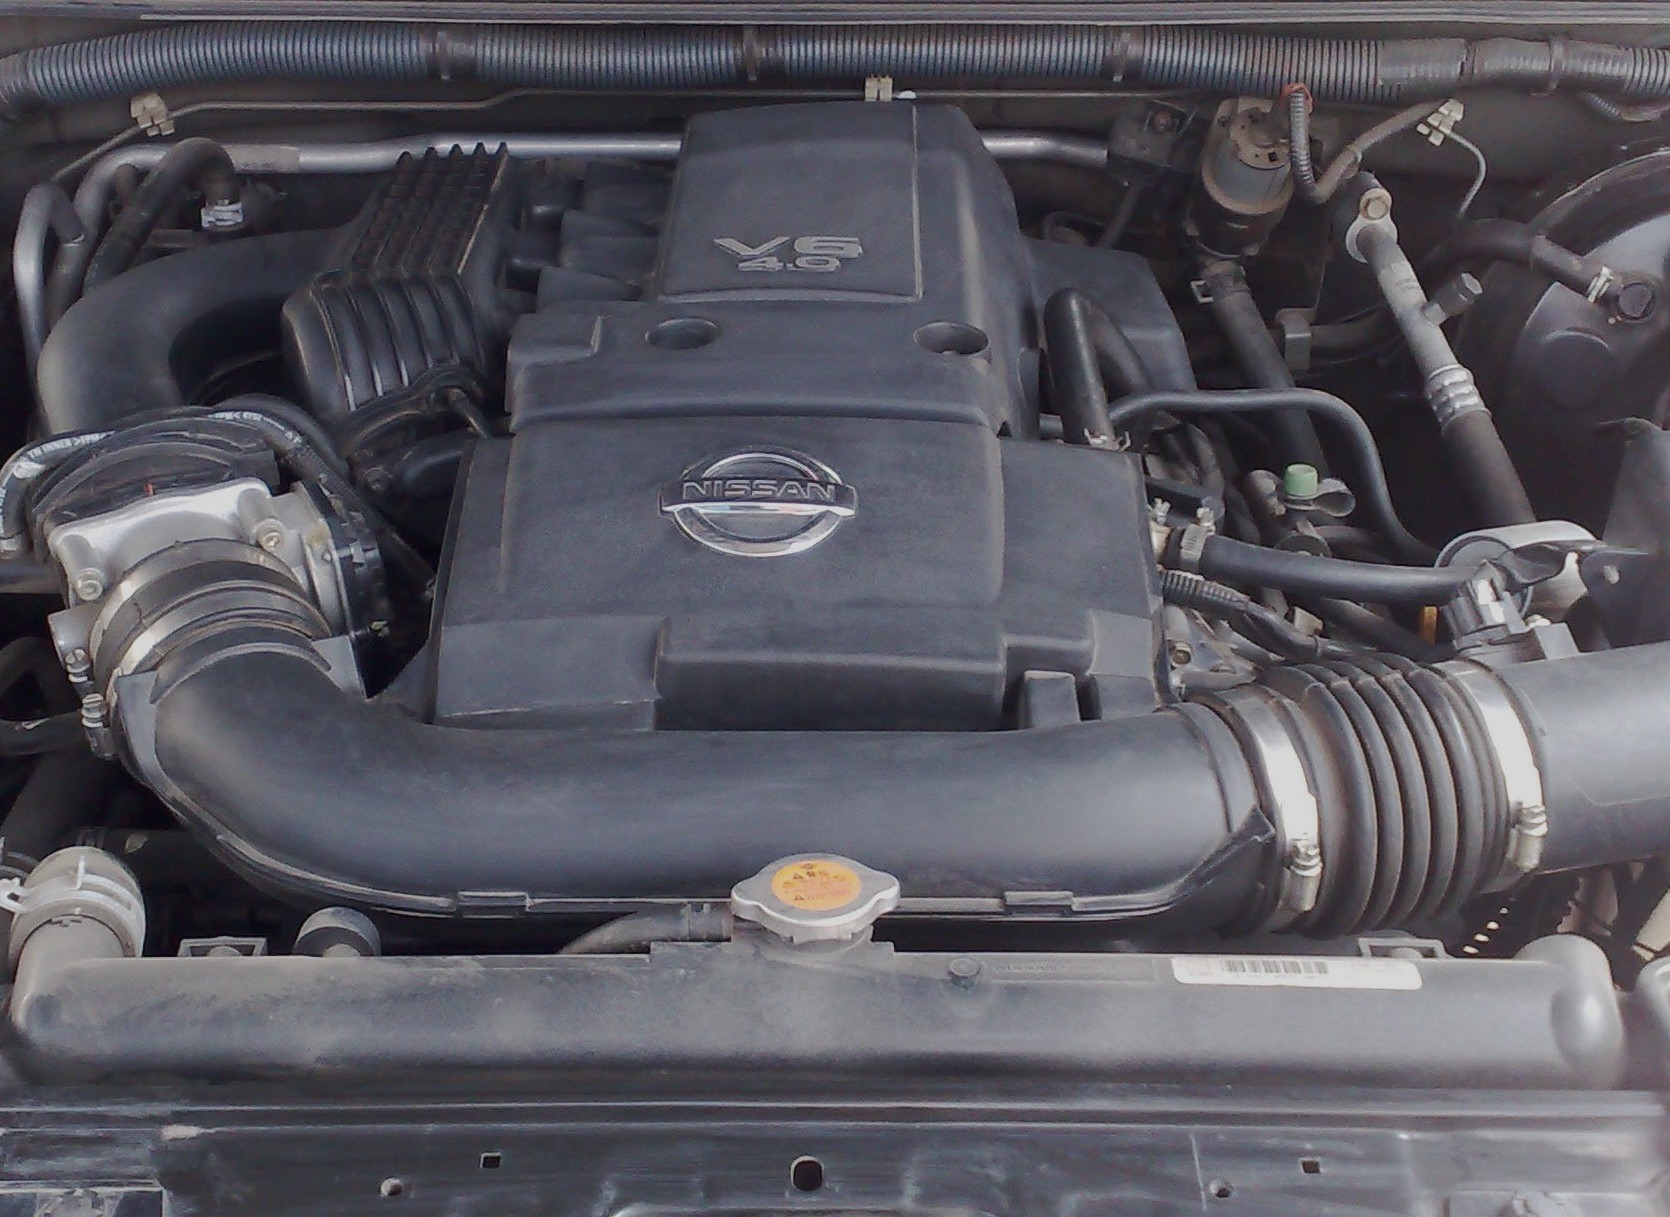 Pathfinder Motor - Vq40 4litre V6 Petrol